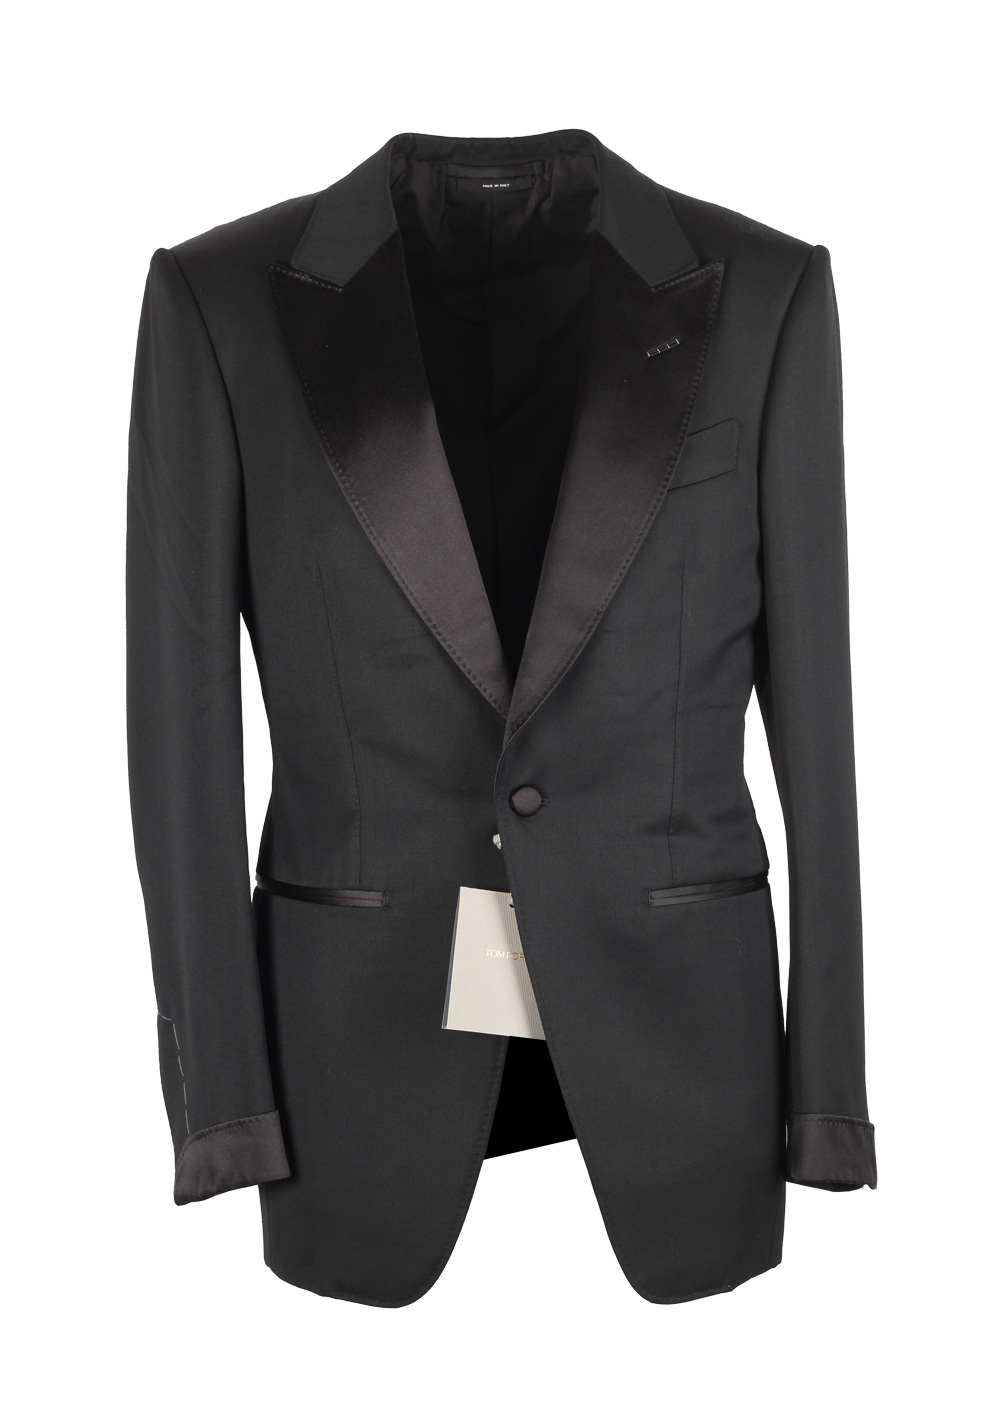 TOM FORD Atticus Black Tuxedo Smoking Suit Size 44C / 34S U.S ...